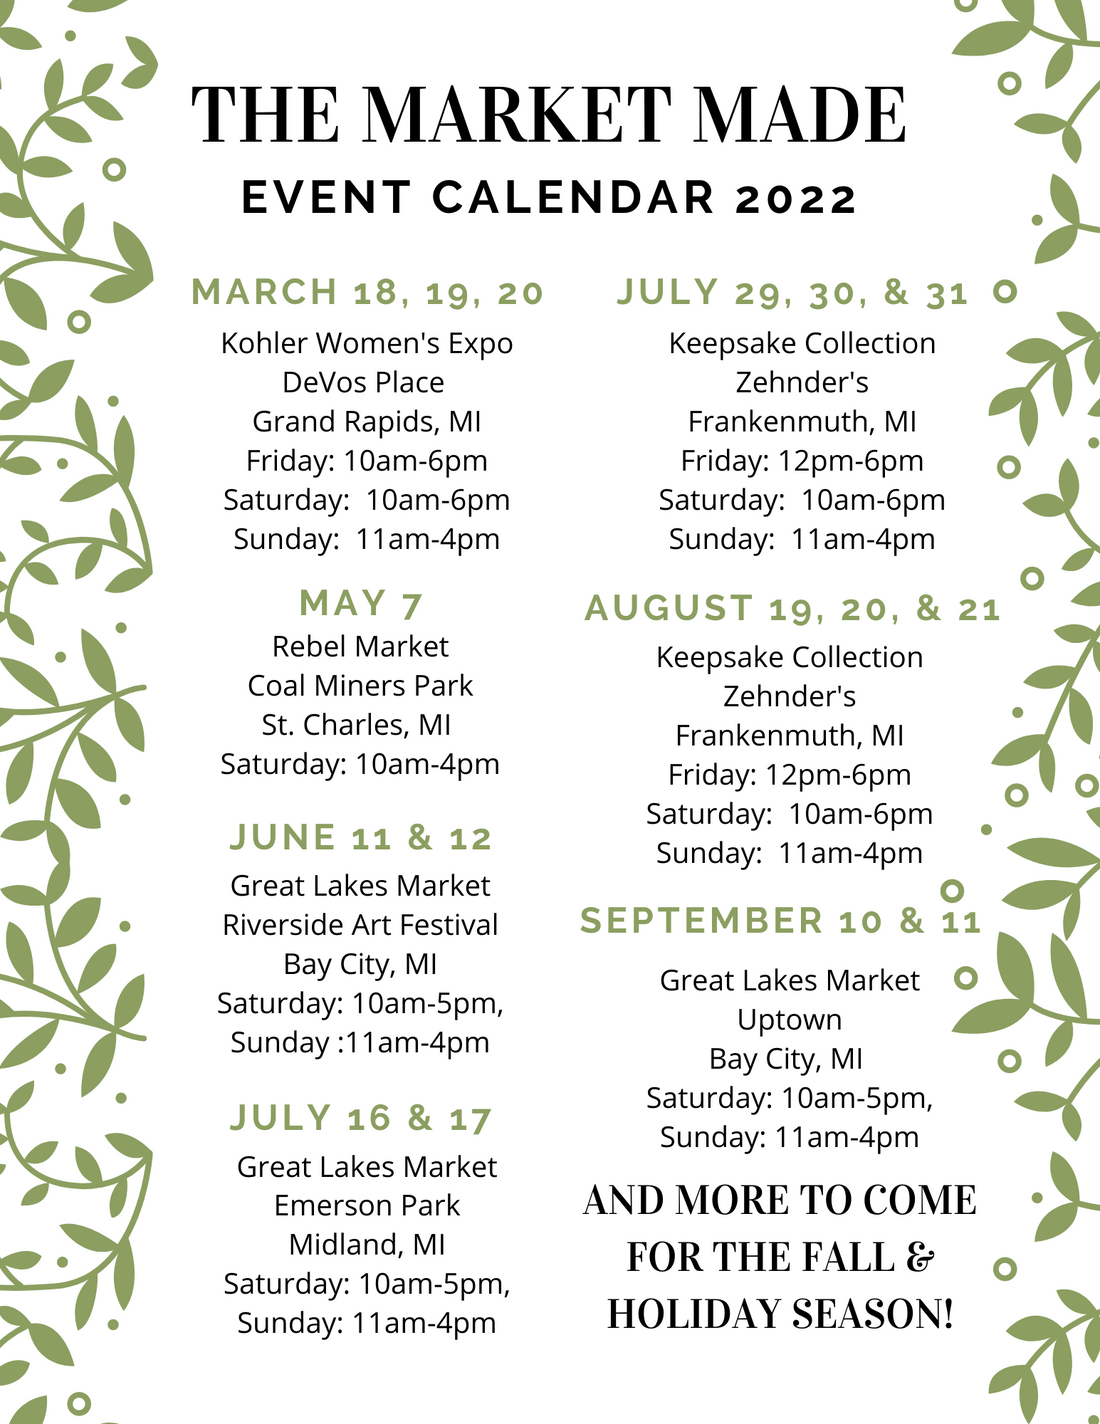 The Market Made Event Calendar 2022